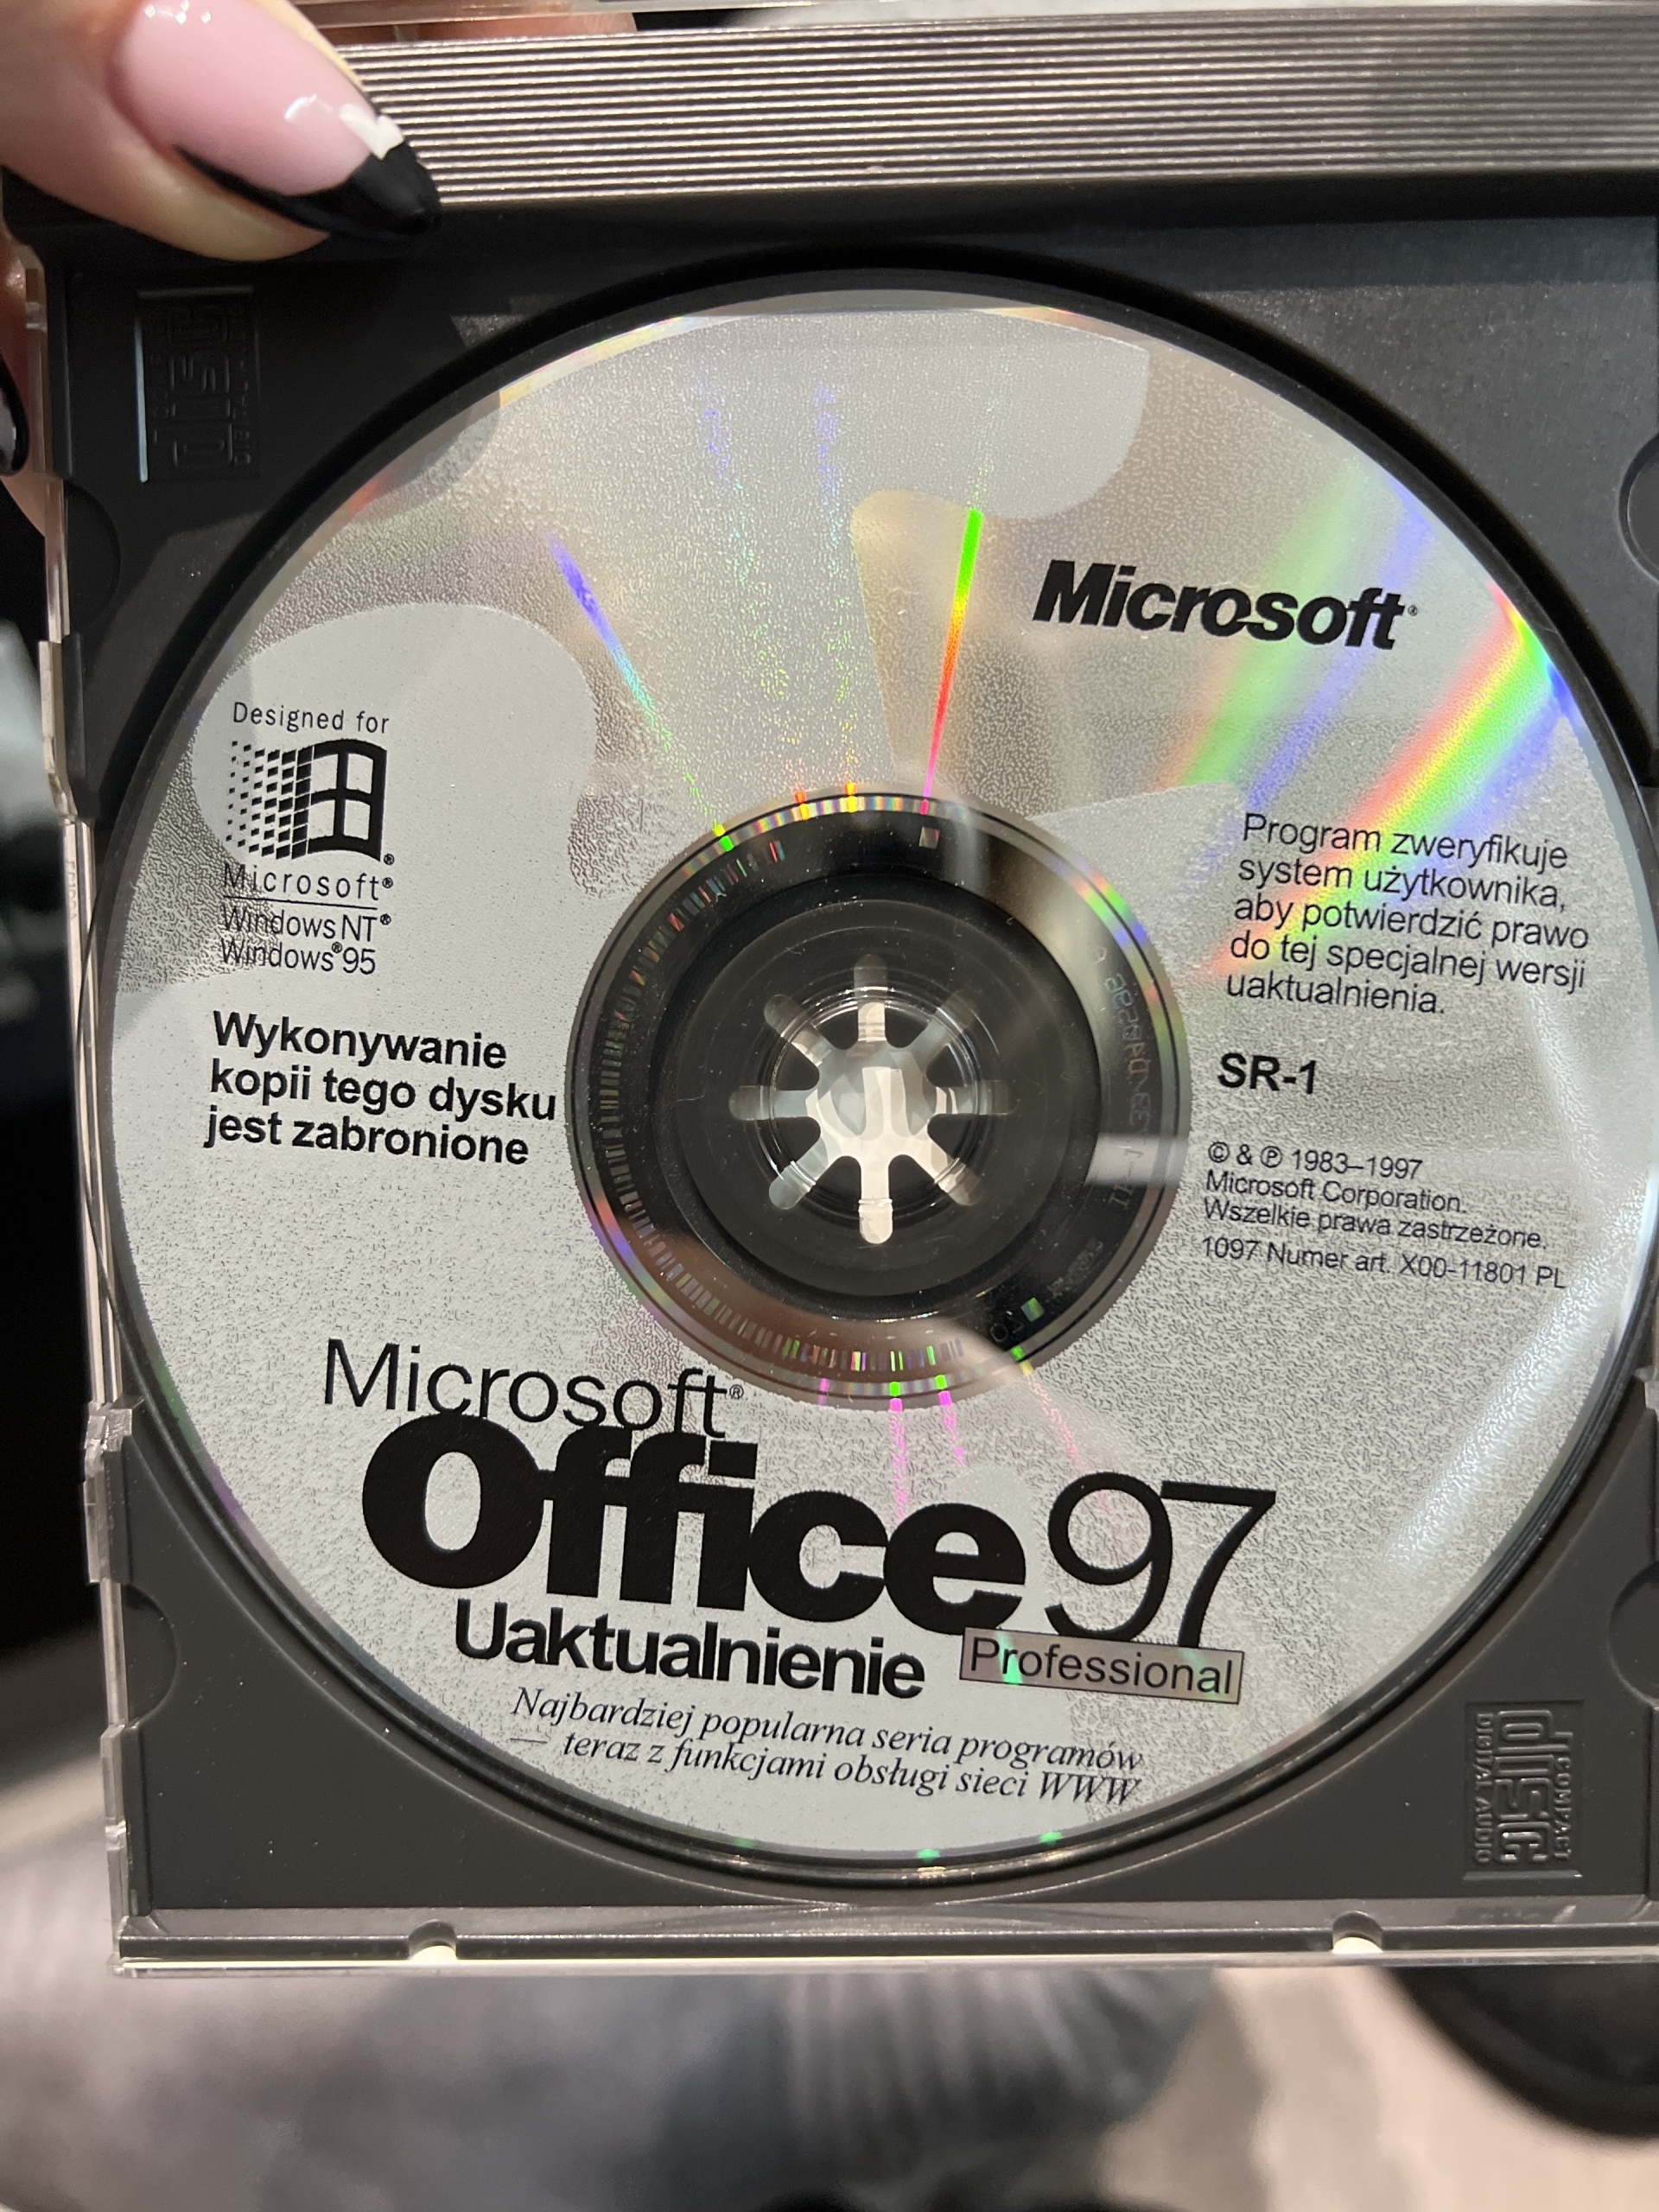 Microsoft Office 97 Professional uaktualnienie | Łódź | Kup teraz na  Allegro Lokalnie